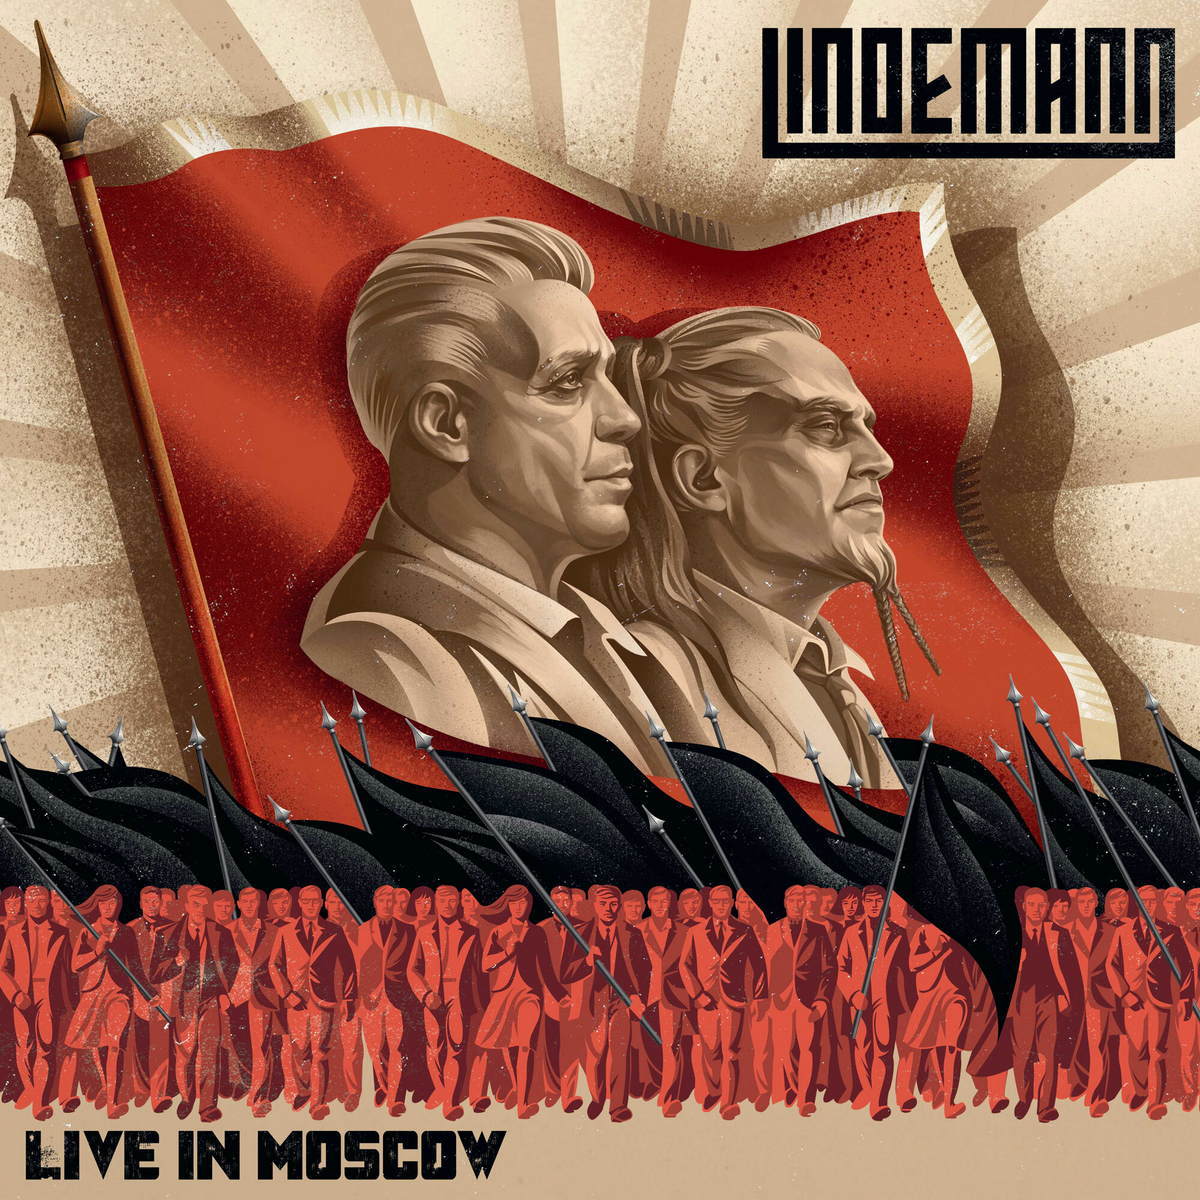 Рок Universal (Ger) Lindemann - Live in Moscow (2LP, Black Vinyl) manfred mann mannerisms 1 cd